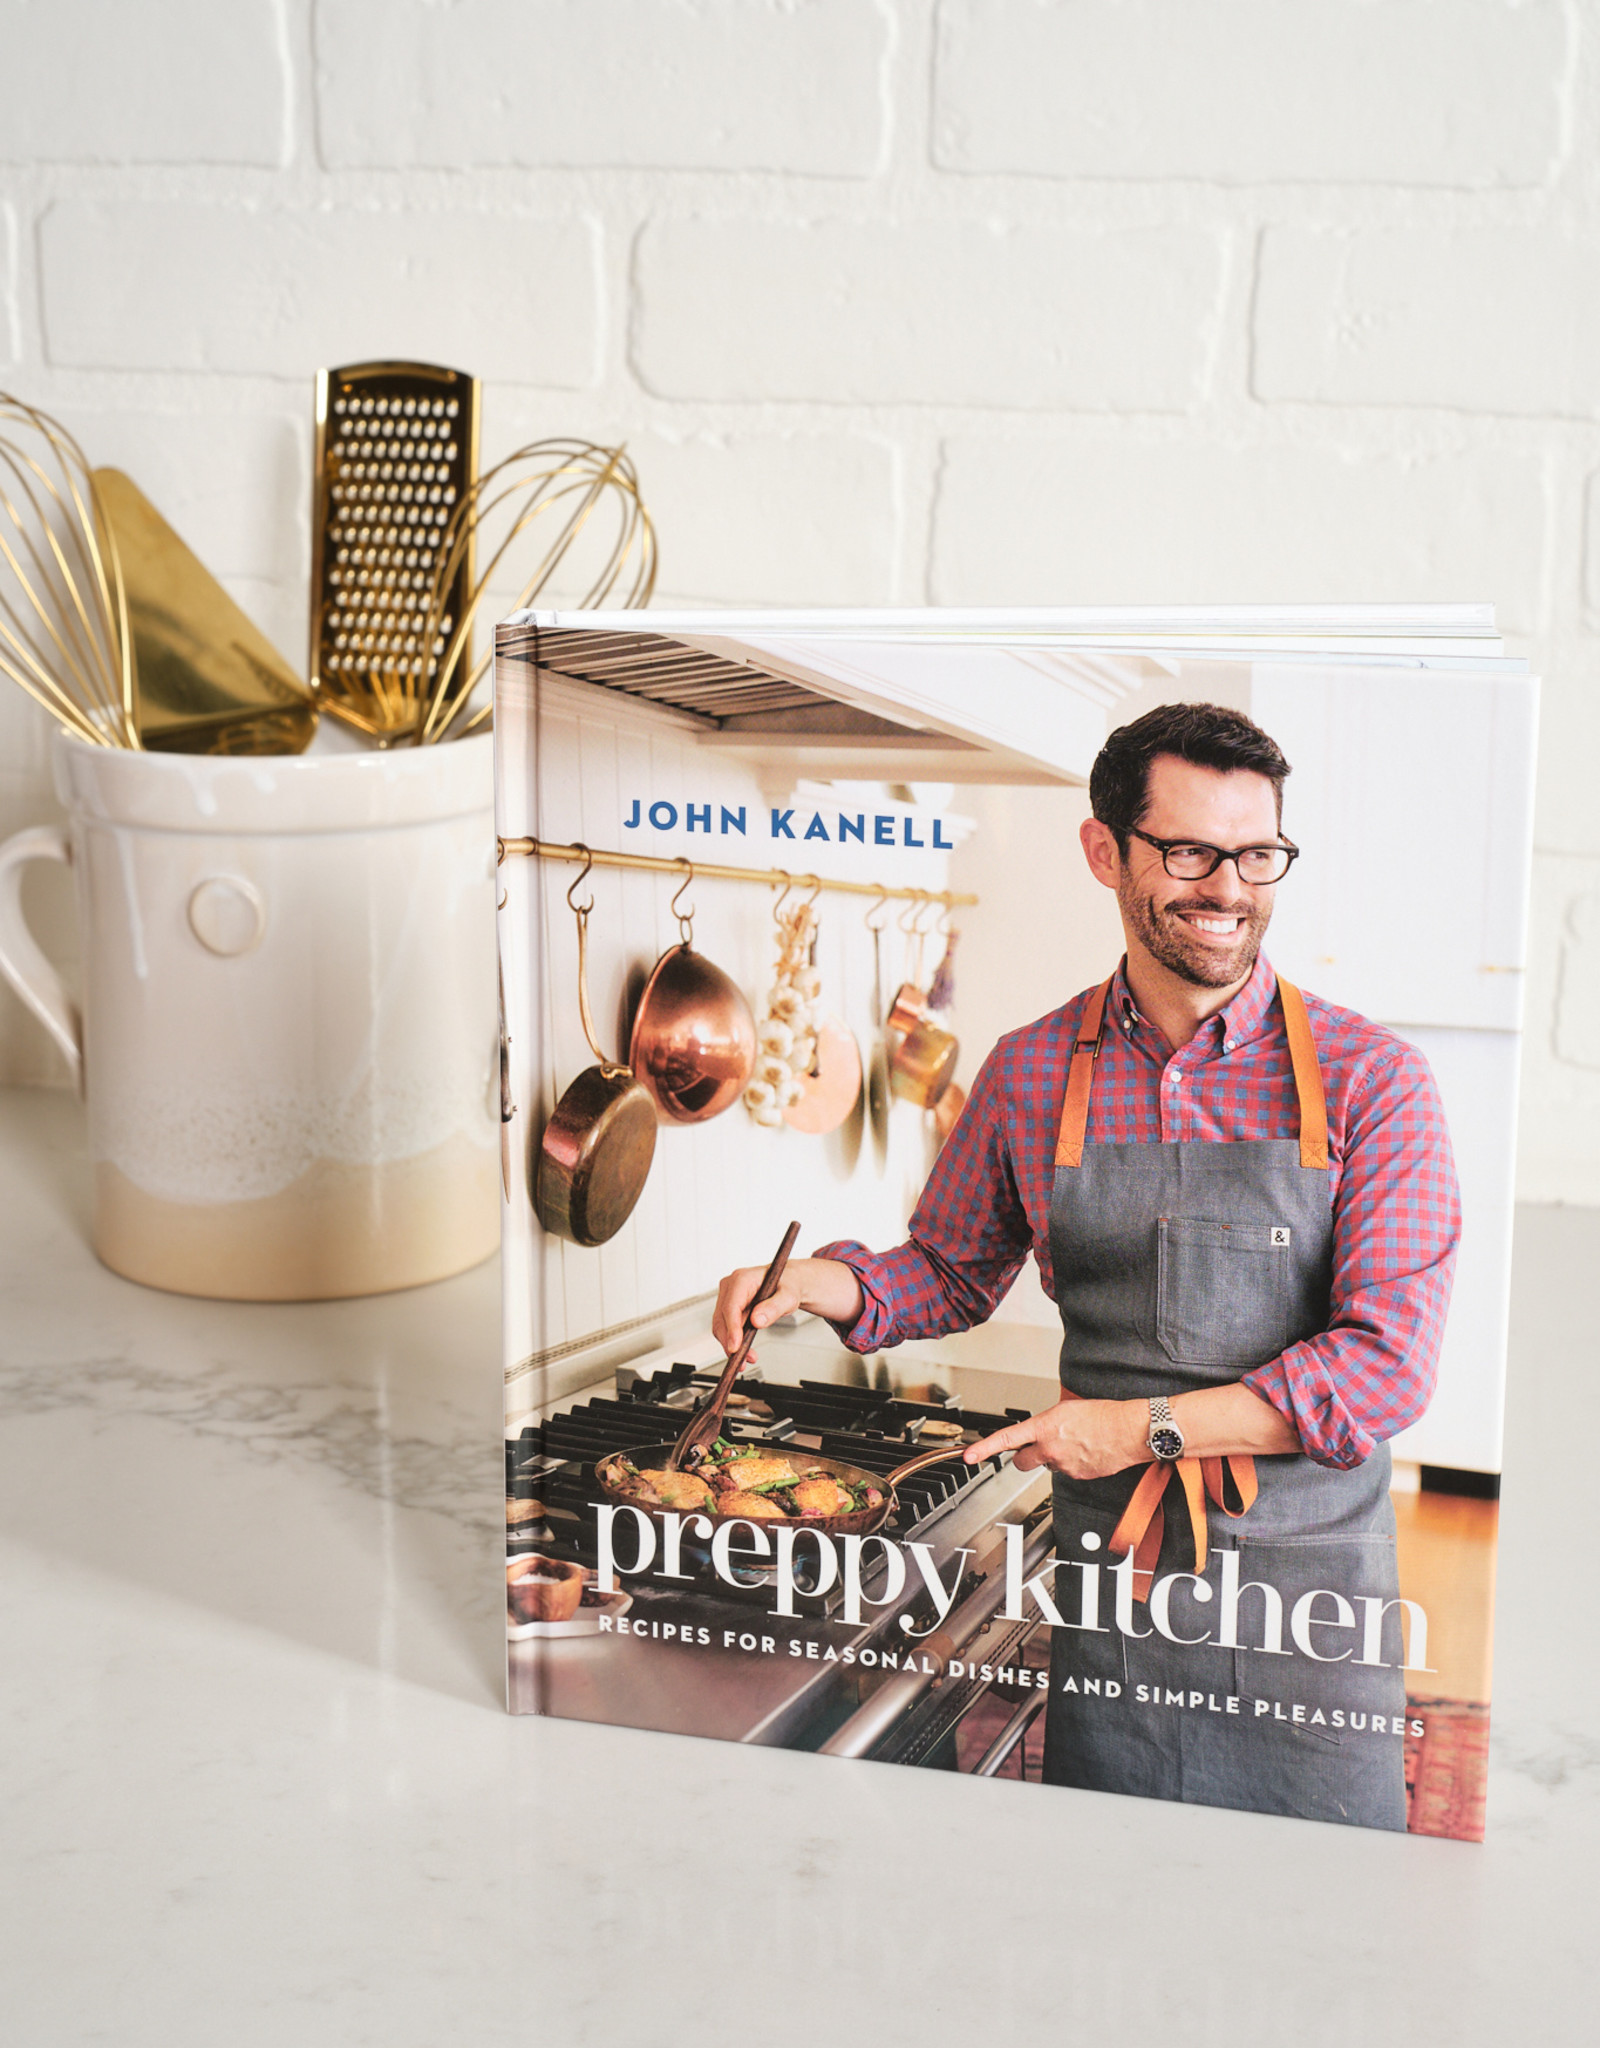 Preppy Kitchen Cookbook